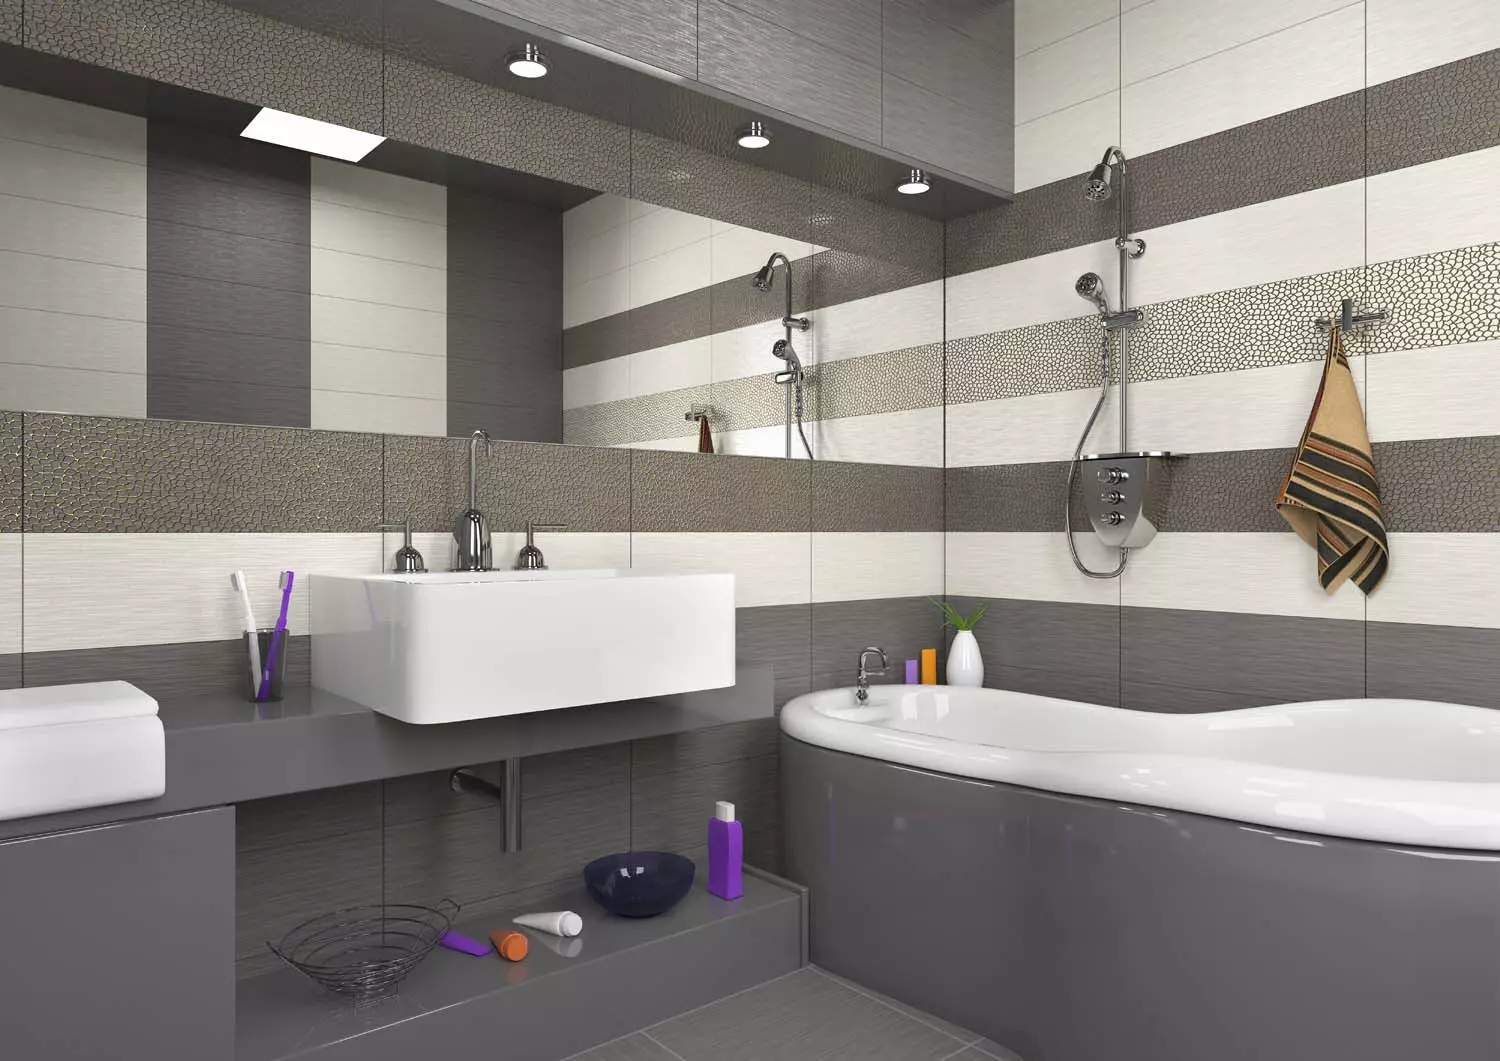 rajoles grises a la cambra de bany (44 fotos) quadres de color gris fosc i la llum al bany. Mate de ceràmica i altres rajoles en colors grisos 10126_41